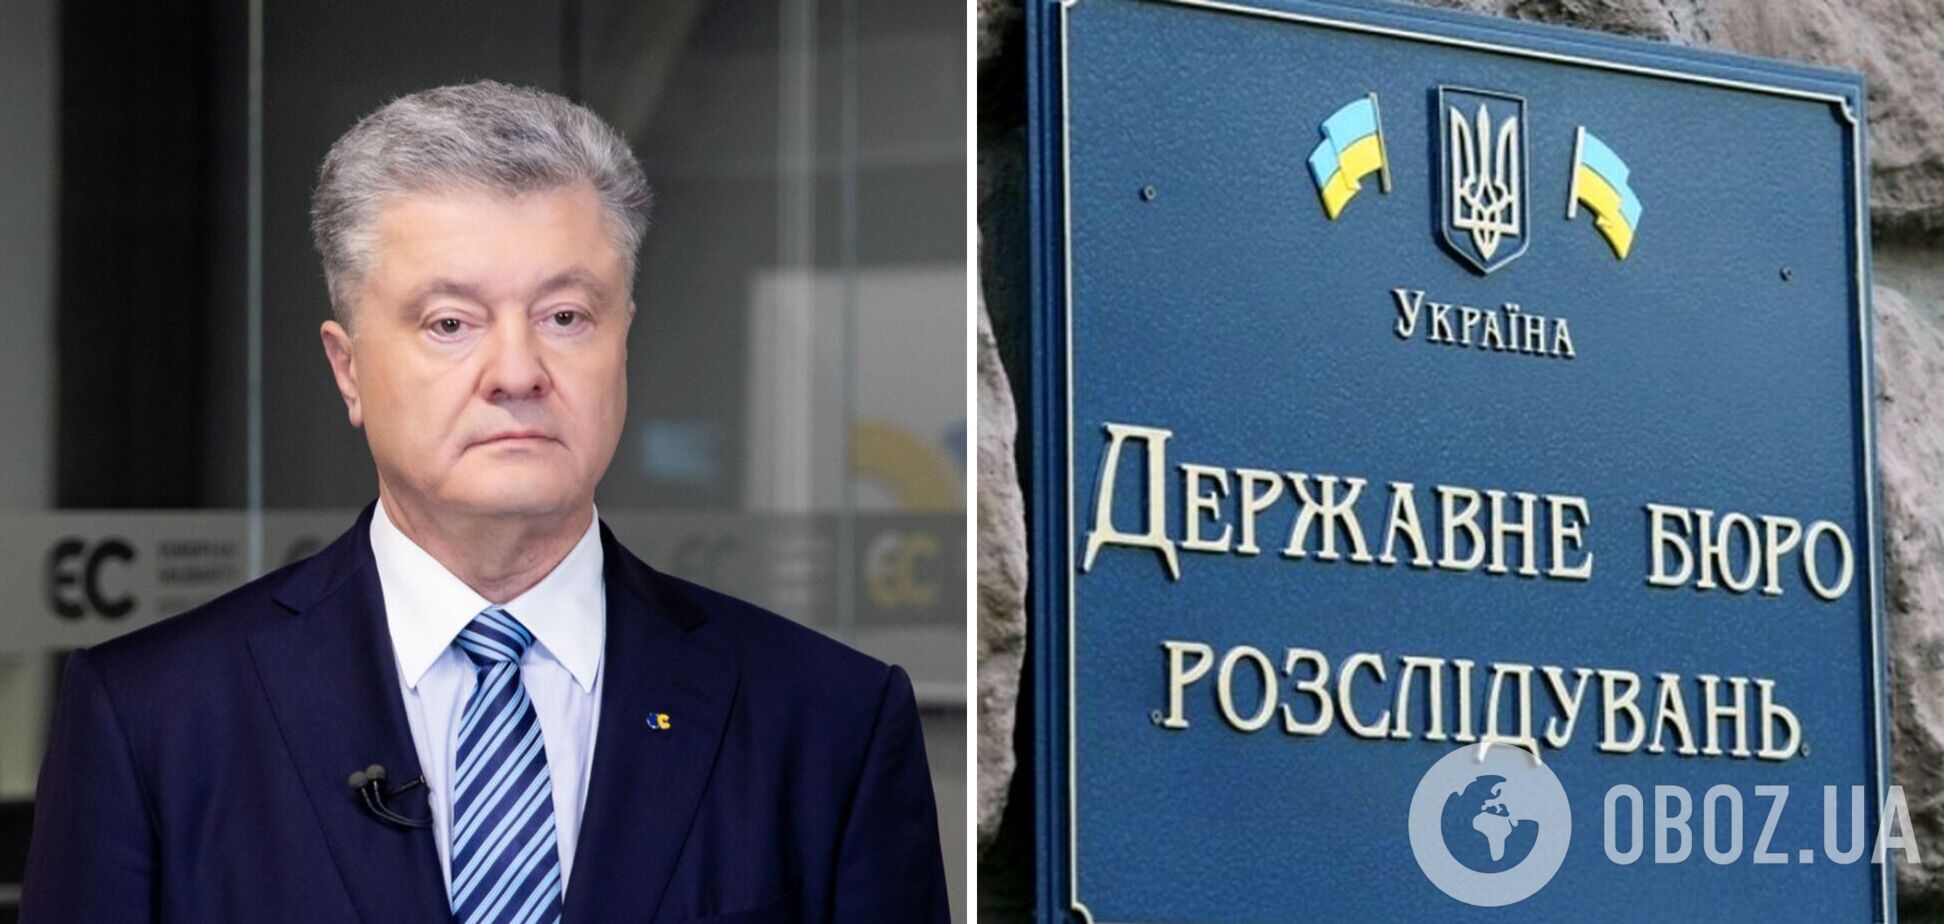 В ГБР планируют обжаловать решение Печерского суда по делу Порошенко